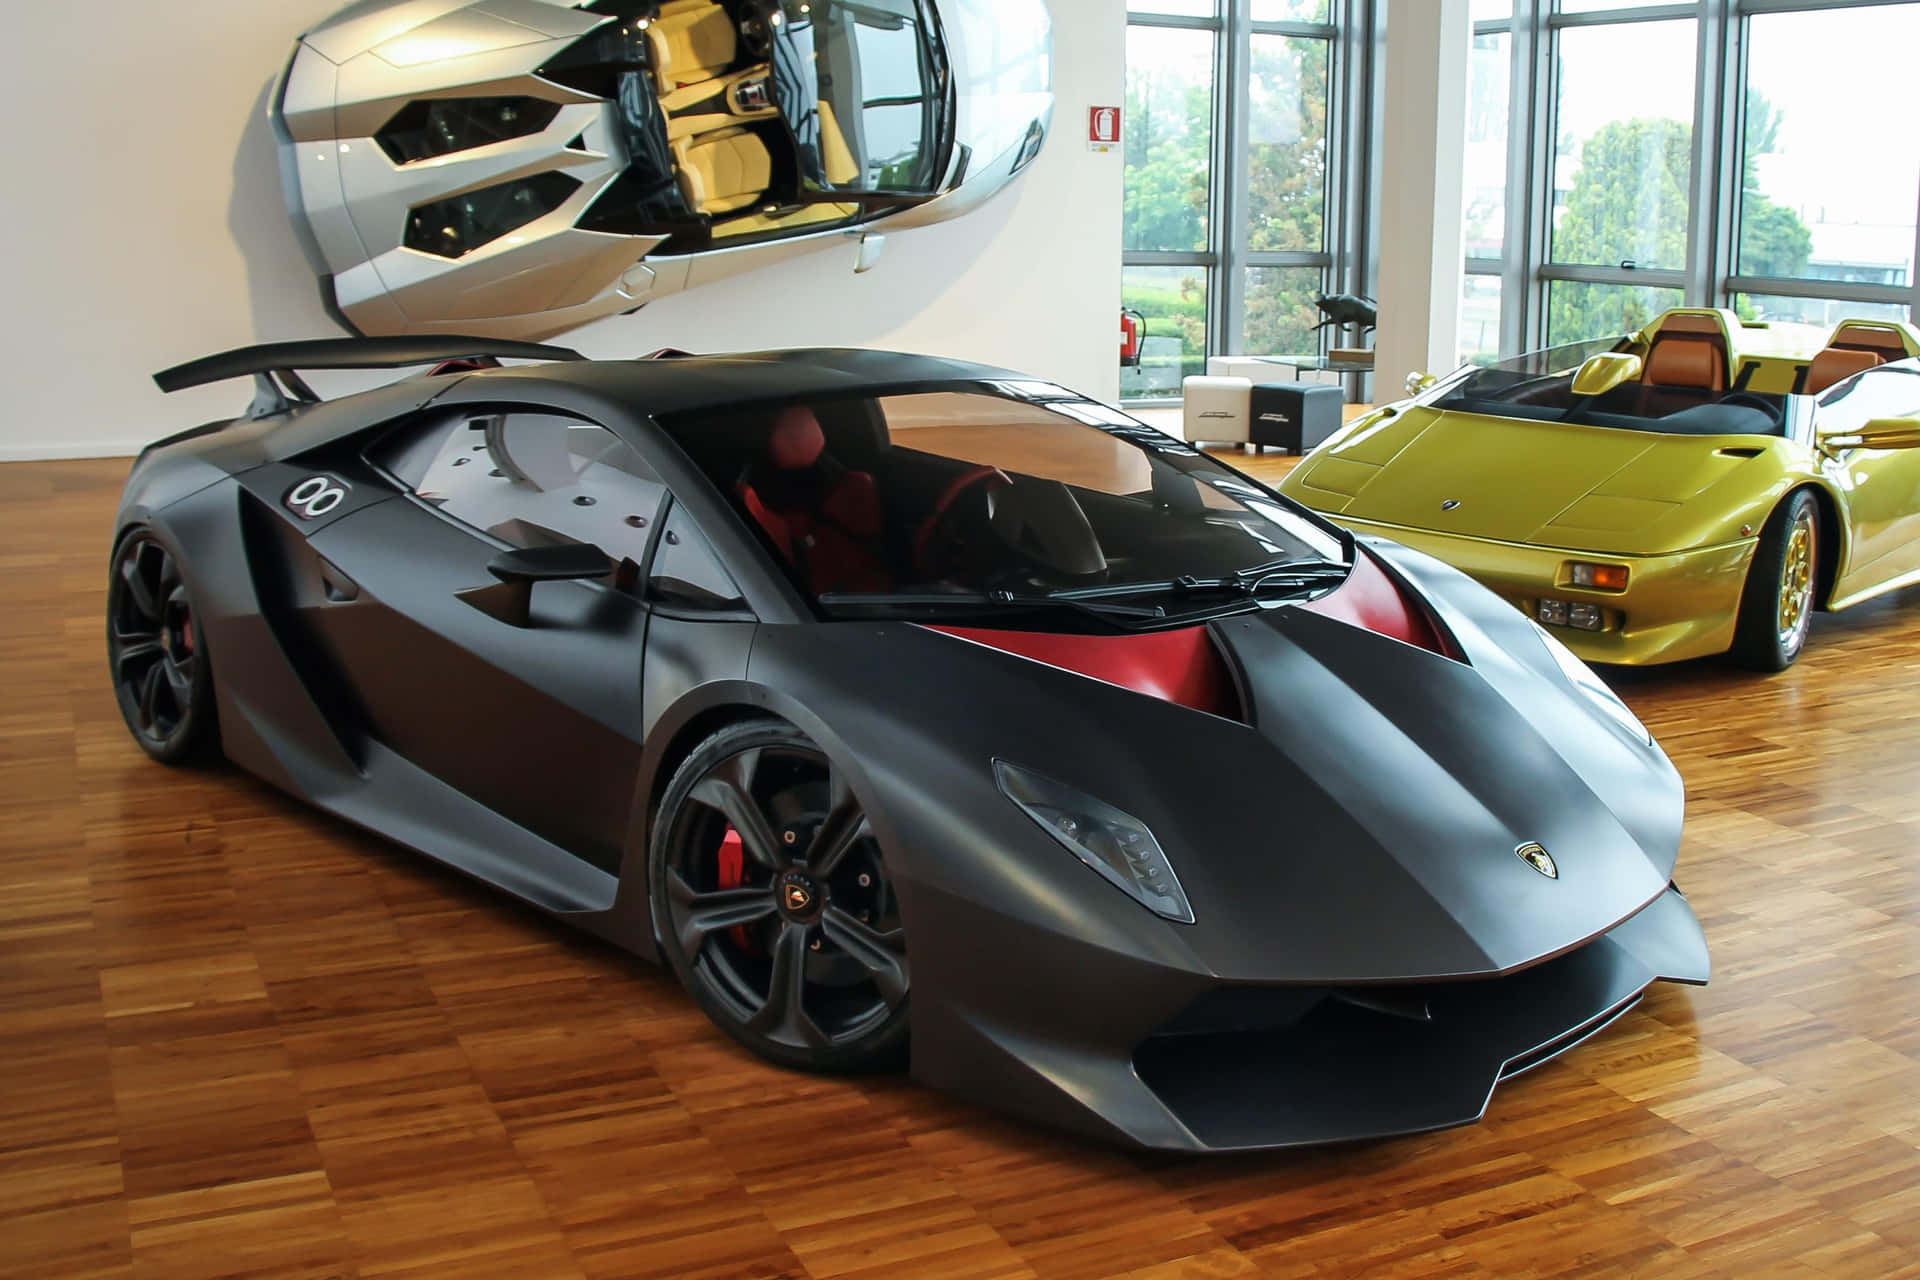 The extraordinary Lamborghini Sesto Elemento sports car in action Wallpaper